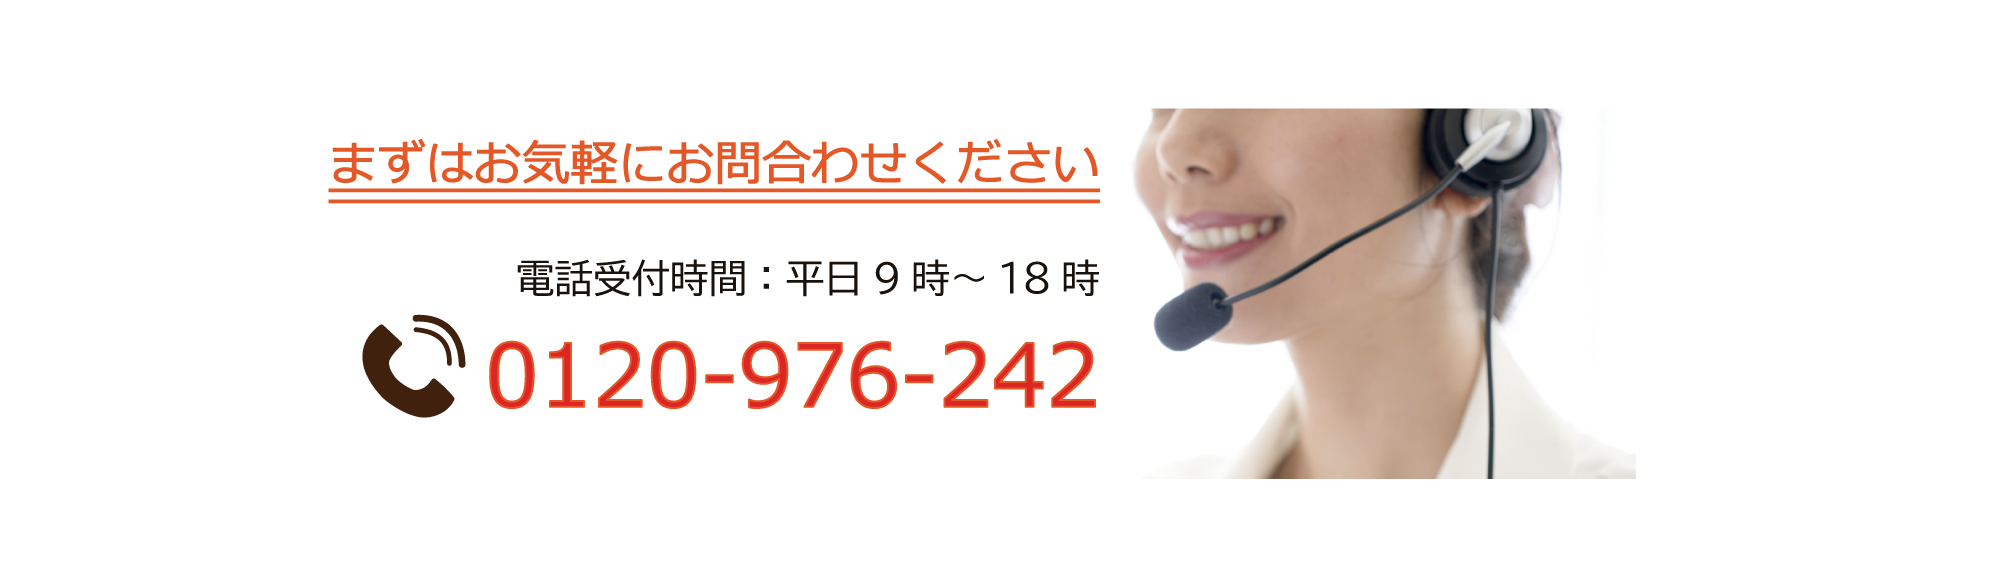 電話でのお問い合わせもお気軽におかけください。ご相談の電話番号は0120-976-242です。